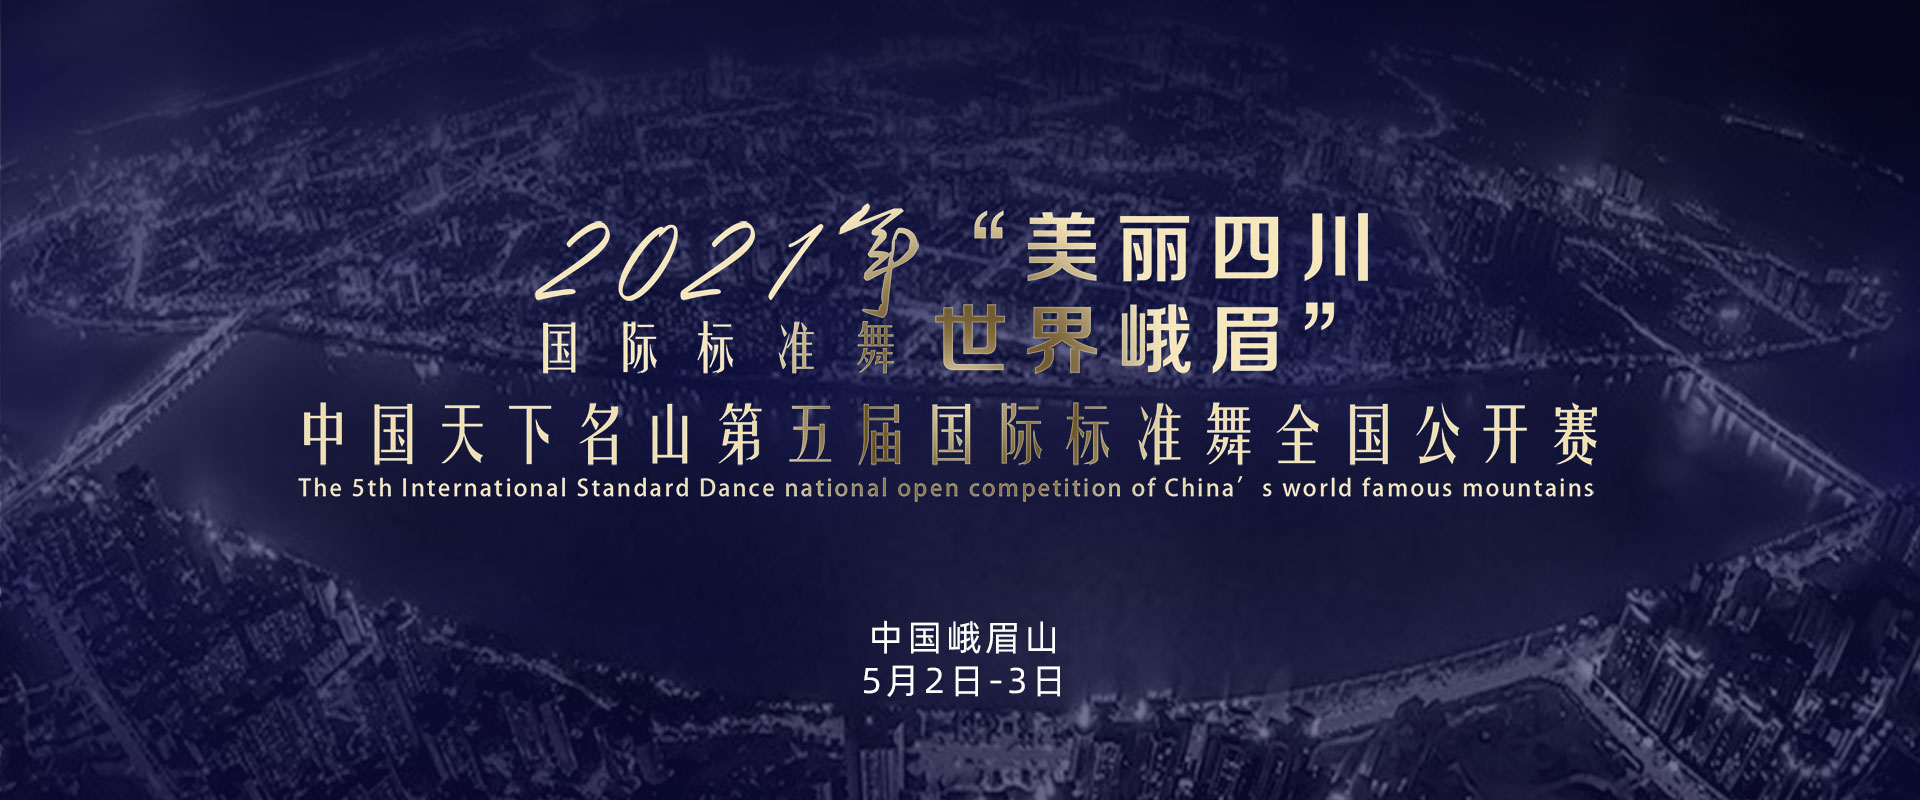 2021年国标标准舞比赛预告